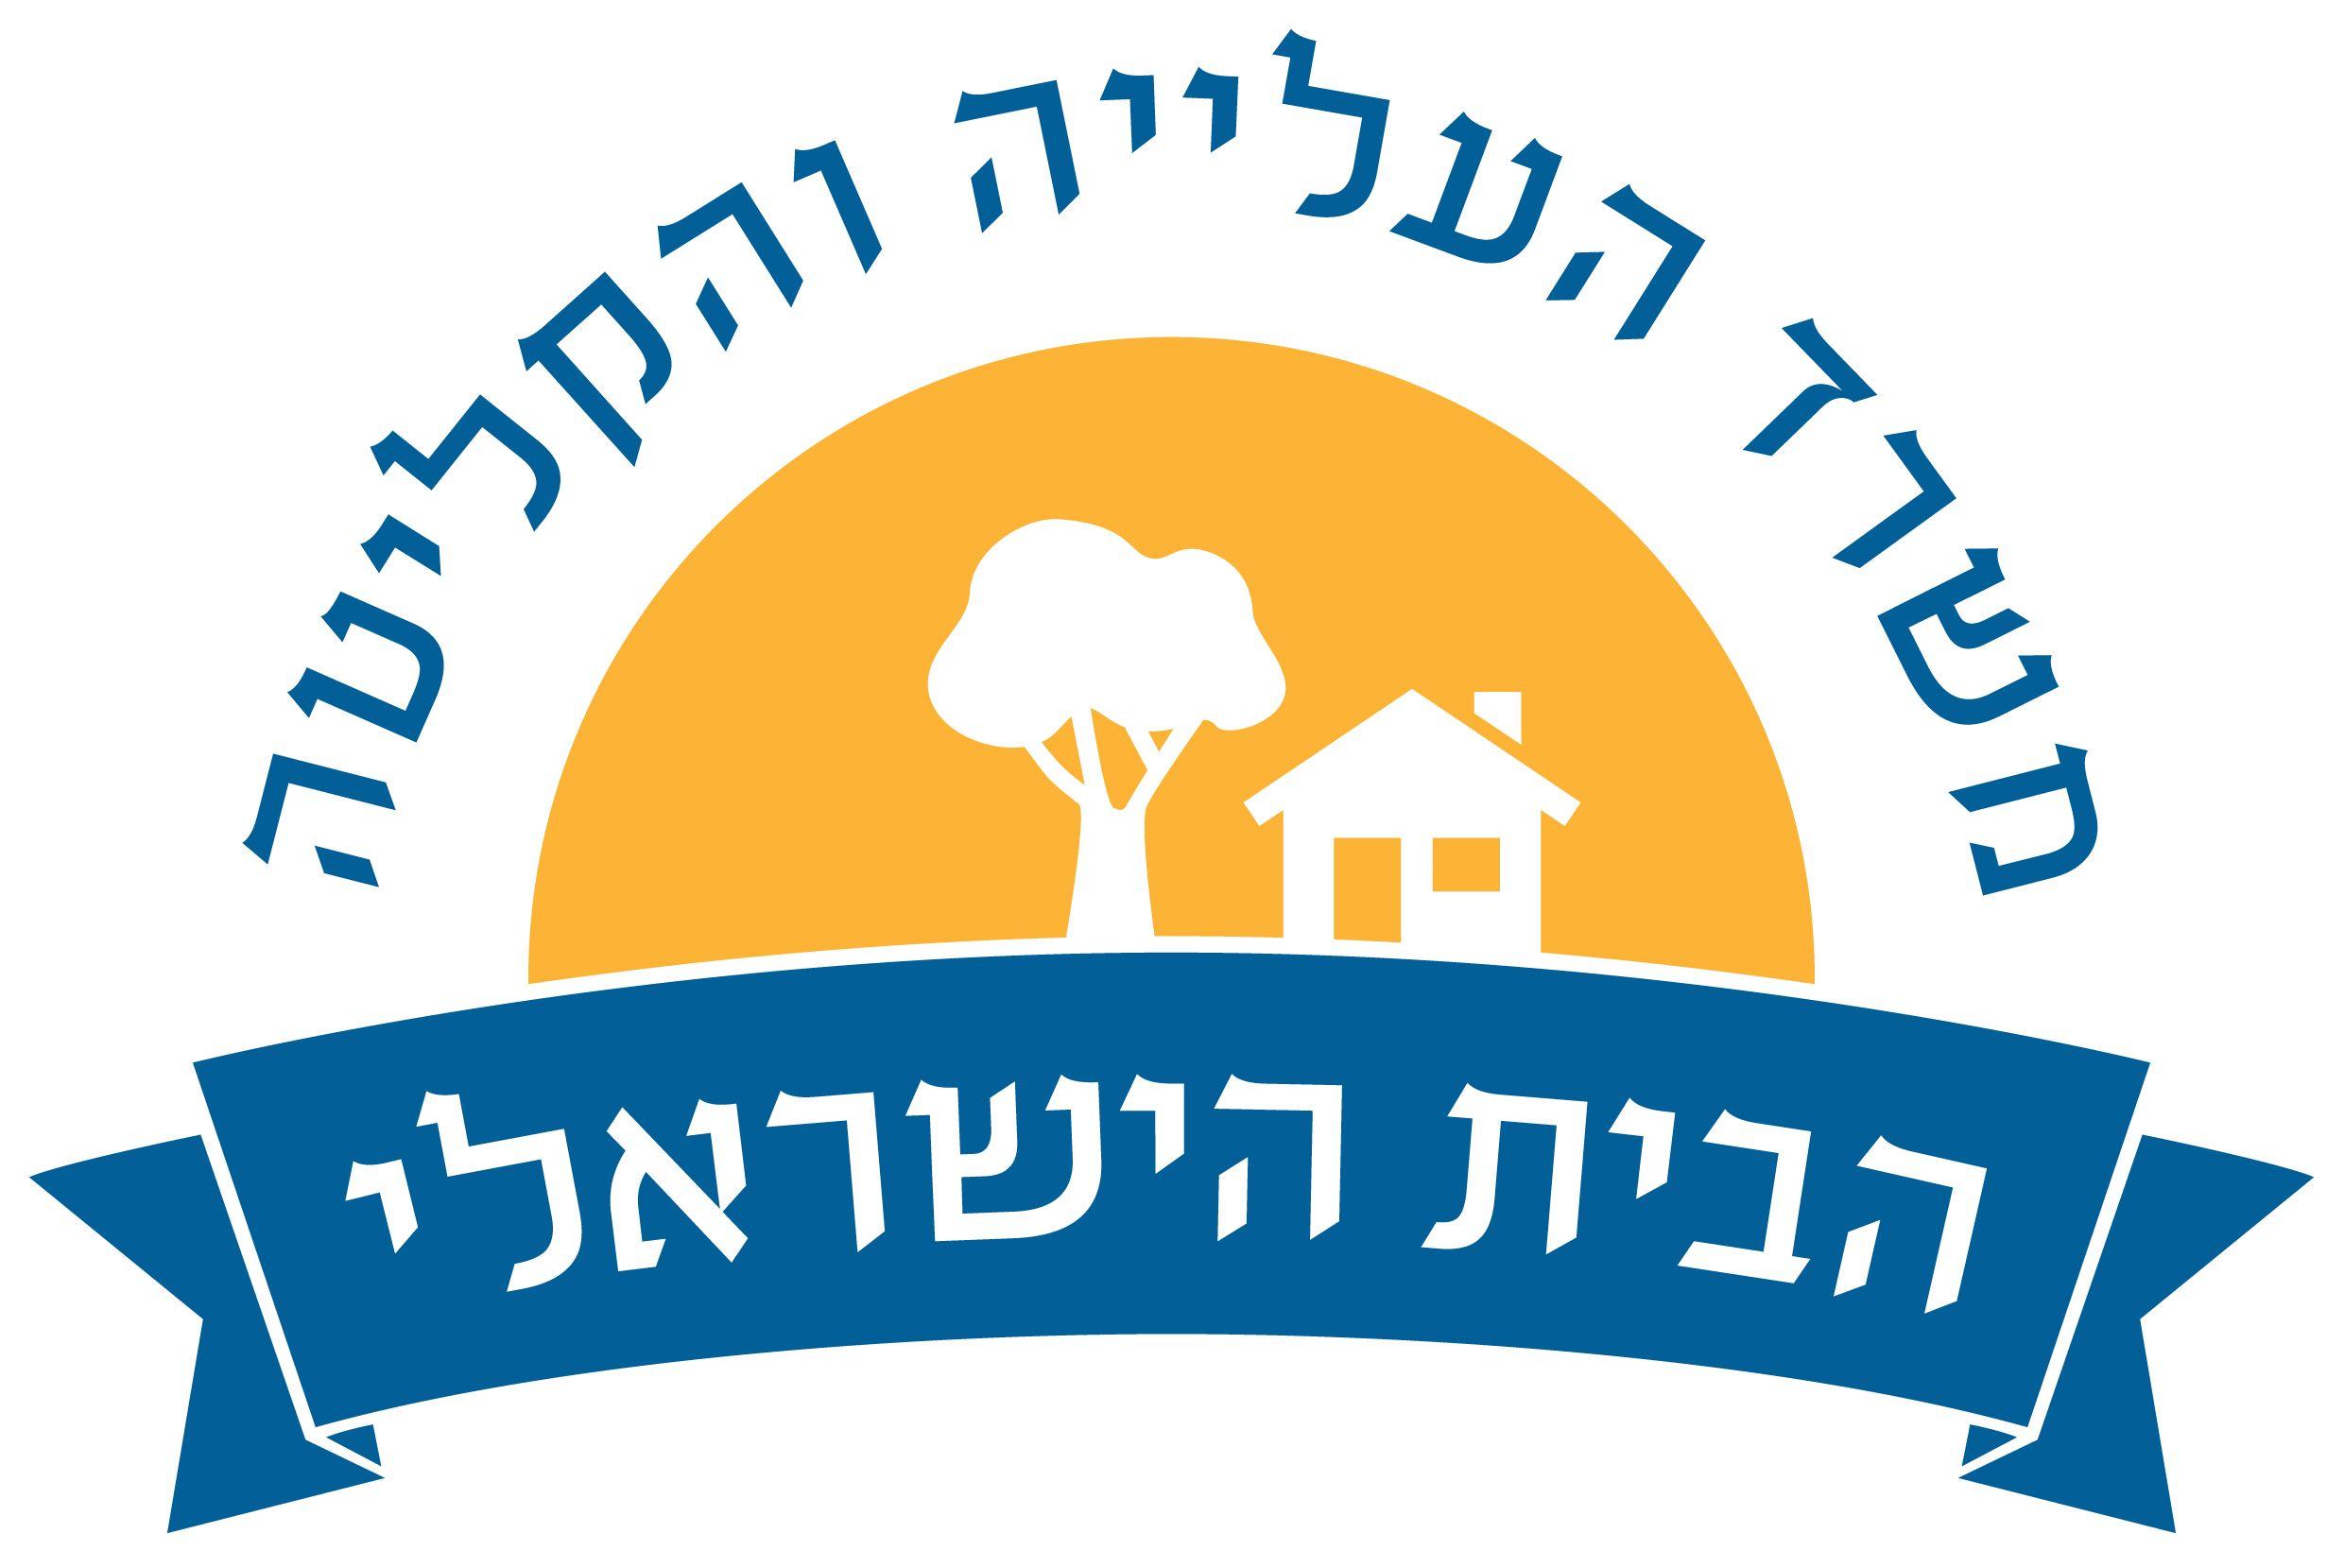 Gloe Logo - Edlavitch DC Jewish Community Center